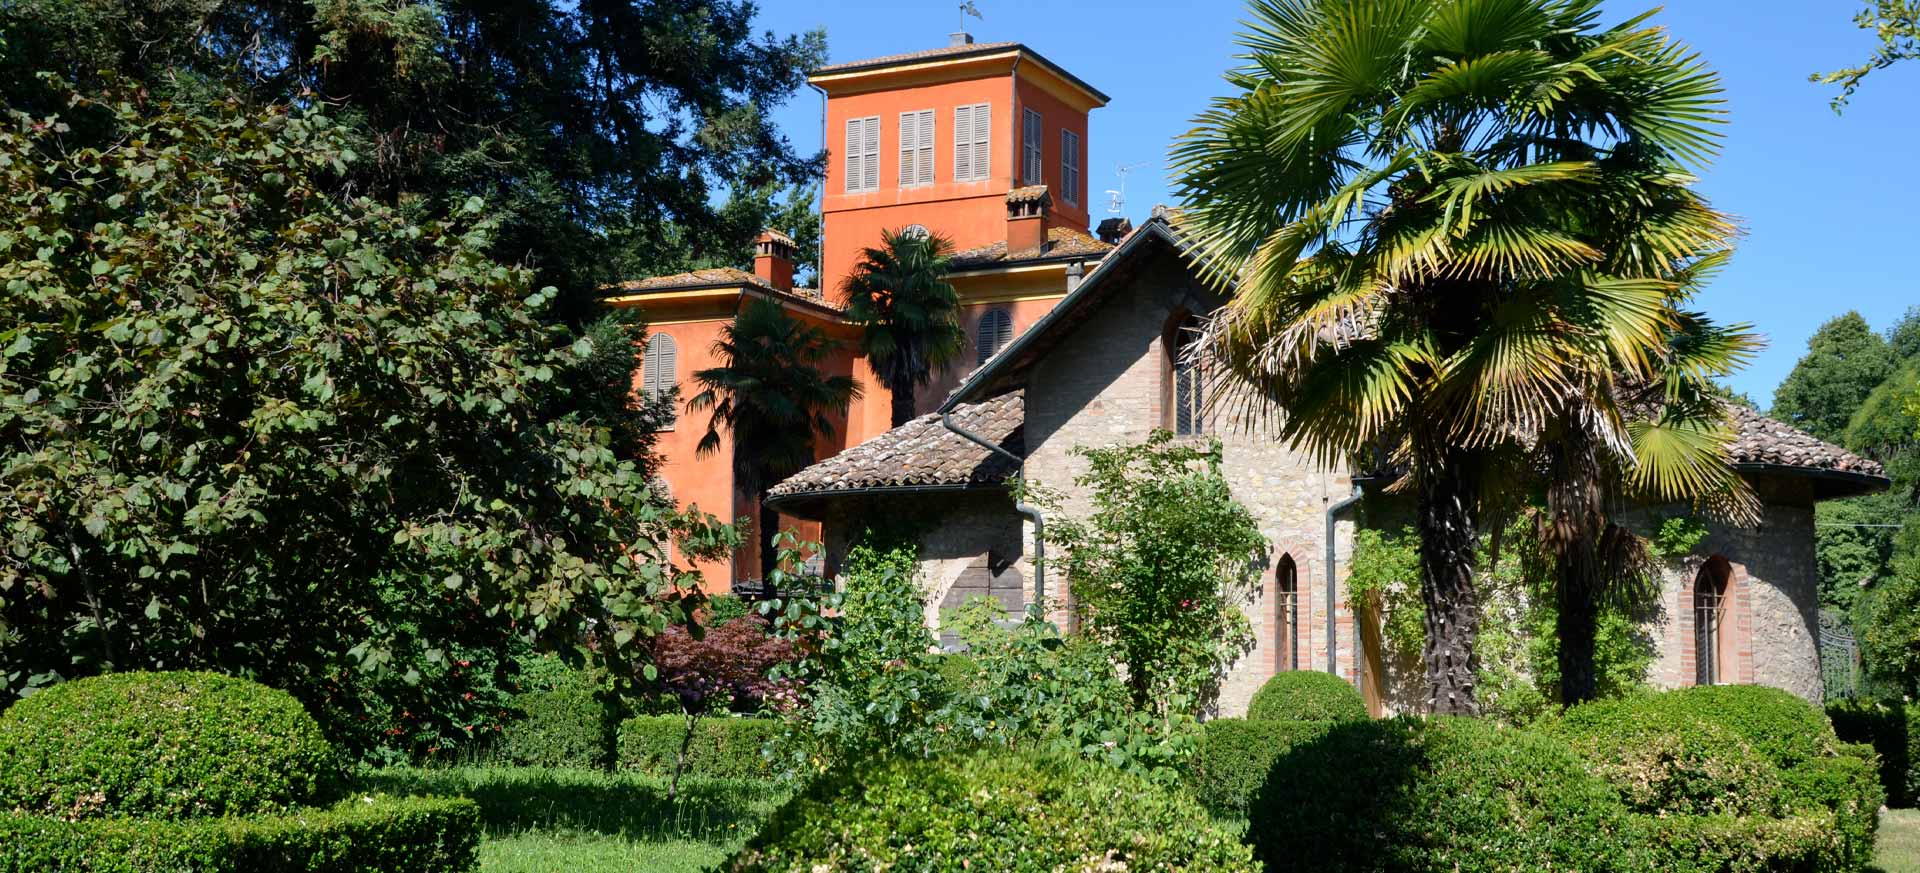 Maison d`hôte de charme Reggio Emilia - 